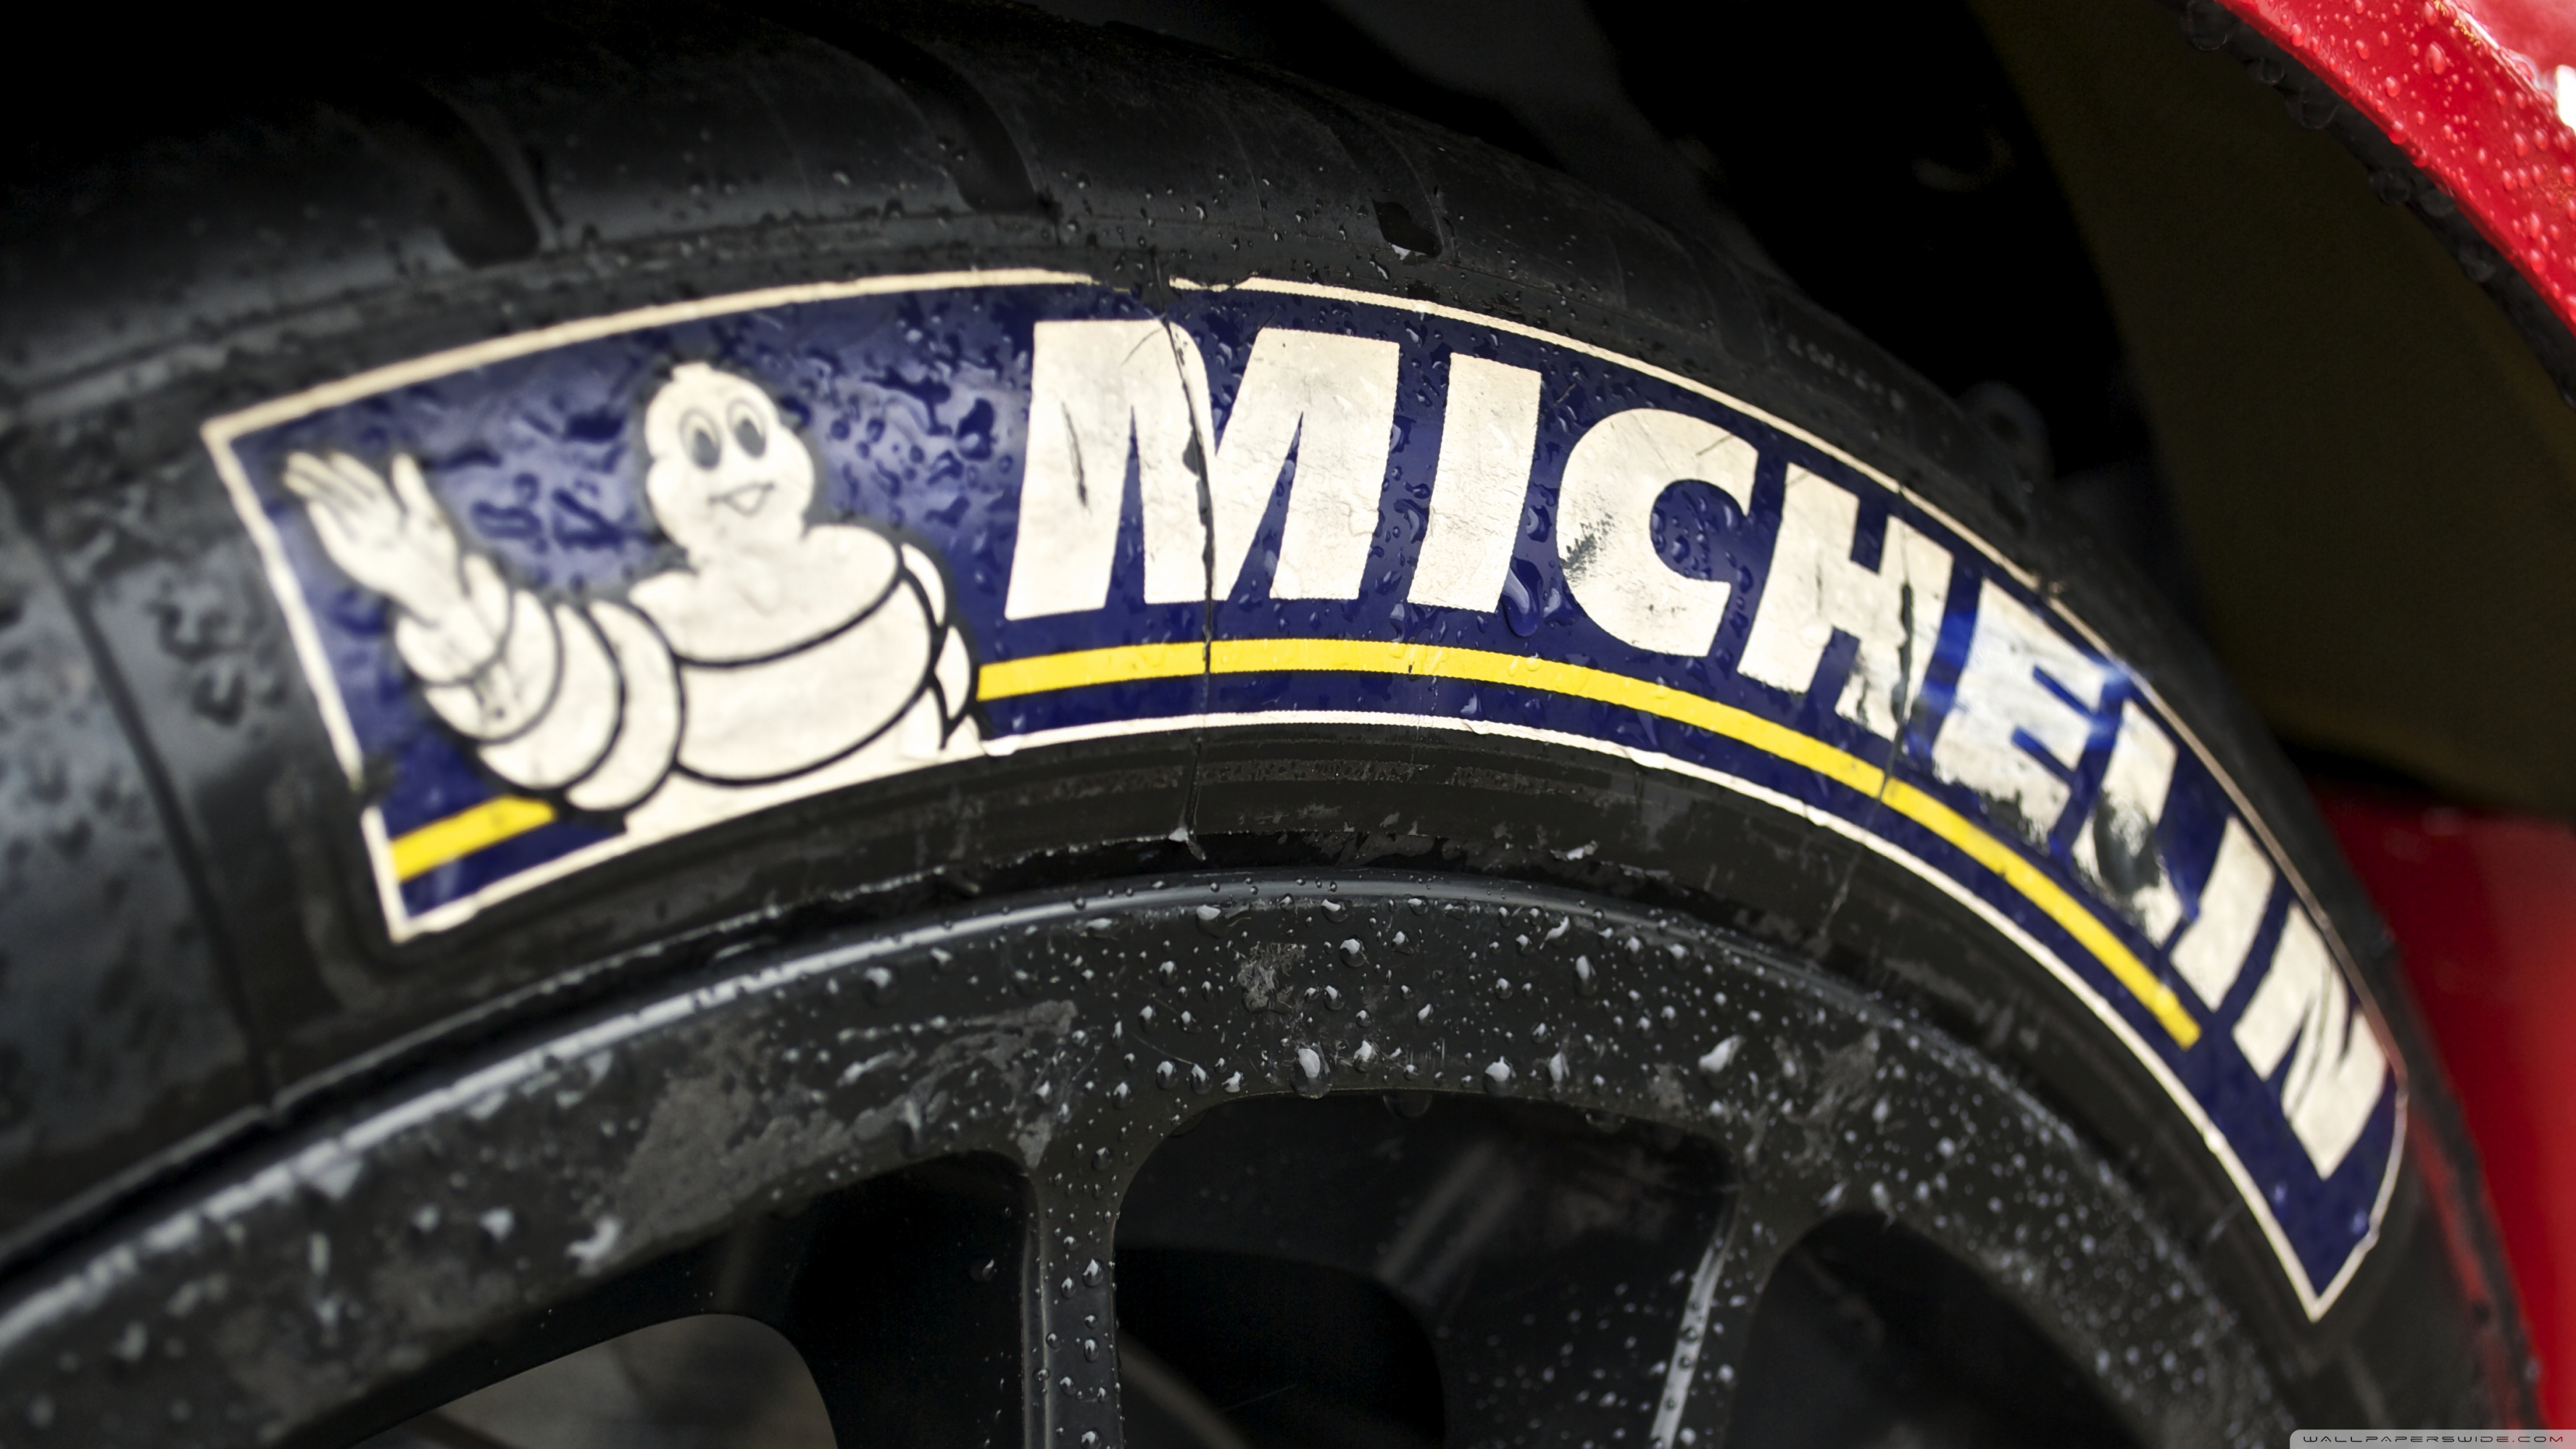 Uhd - Pneu Michelin , HD Wallpaper & Backgrounds